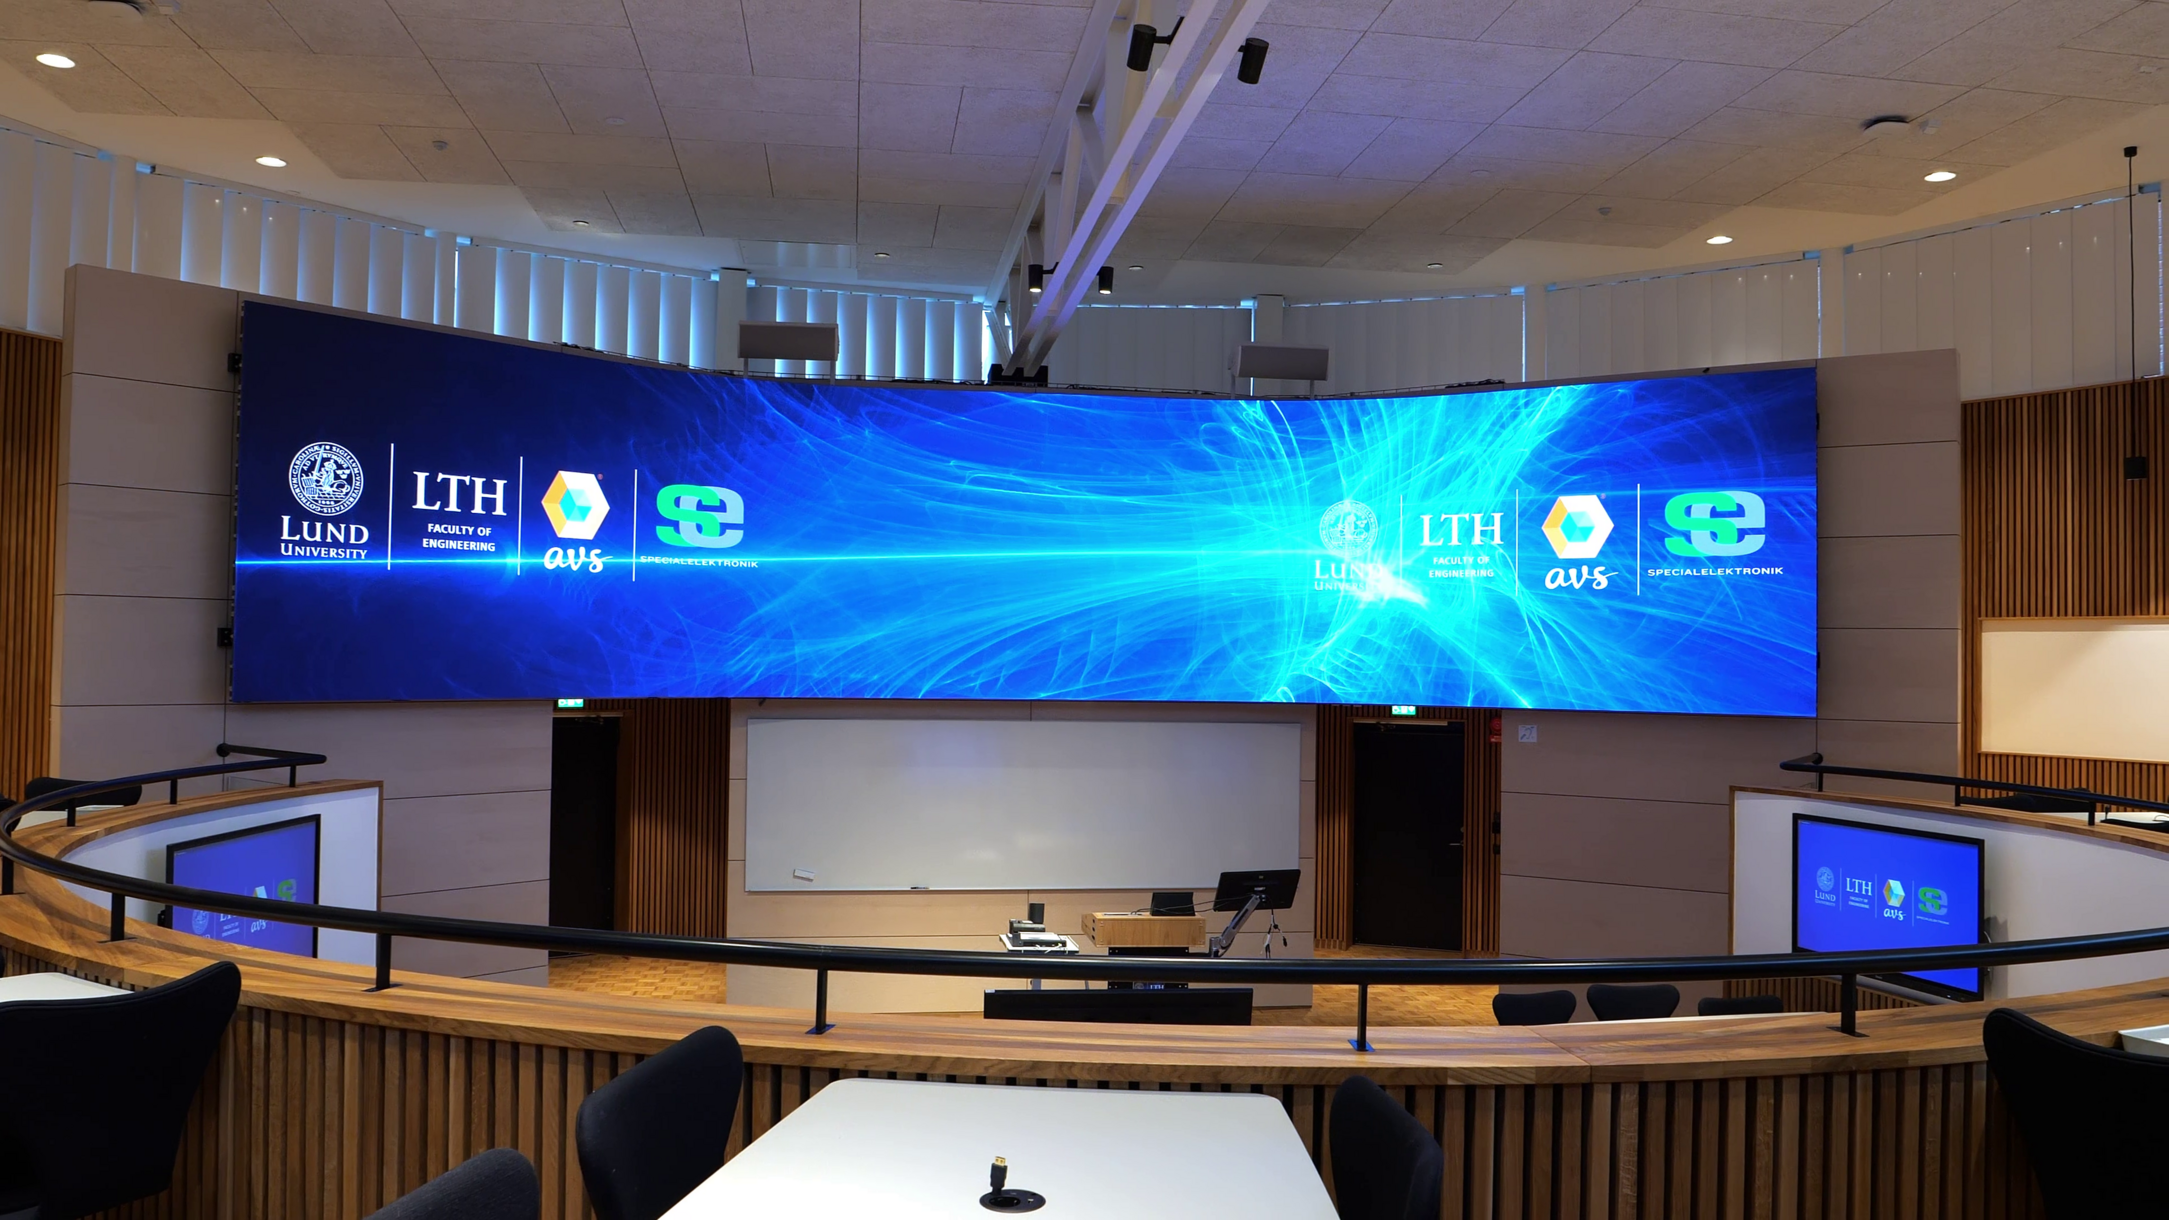 ルンド大学の講義室にある大きな曲面LEDスクリーン。